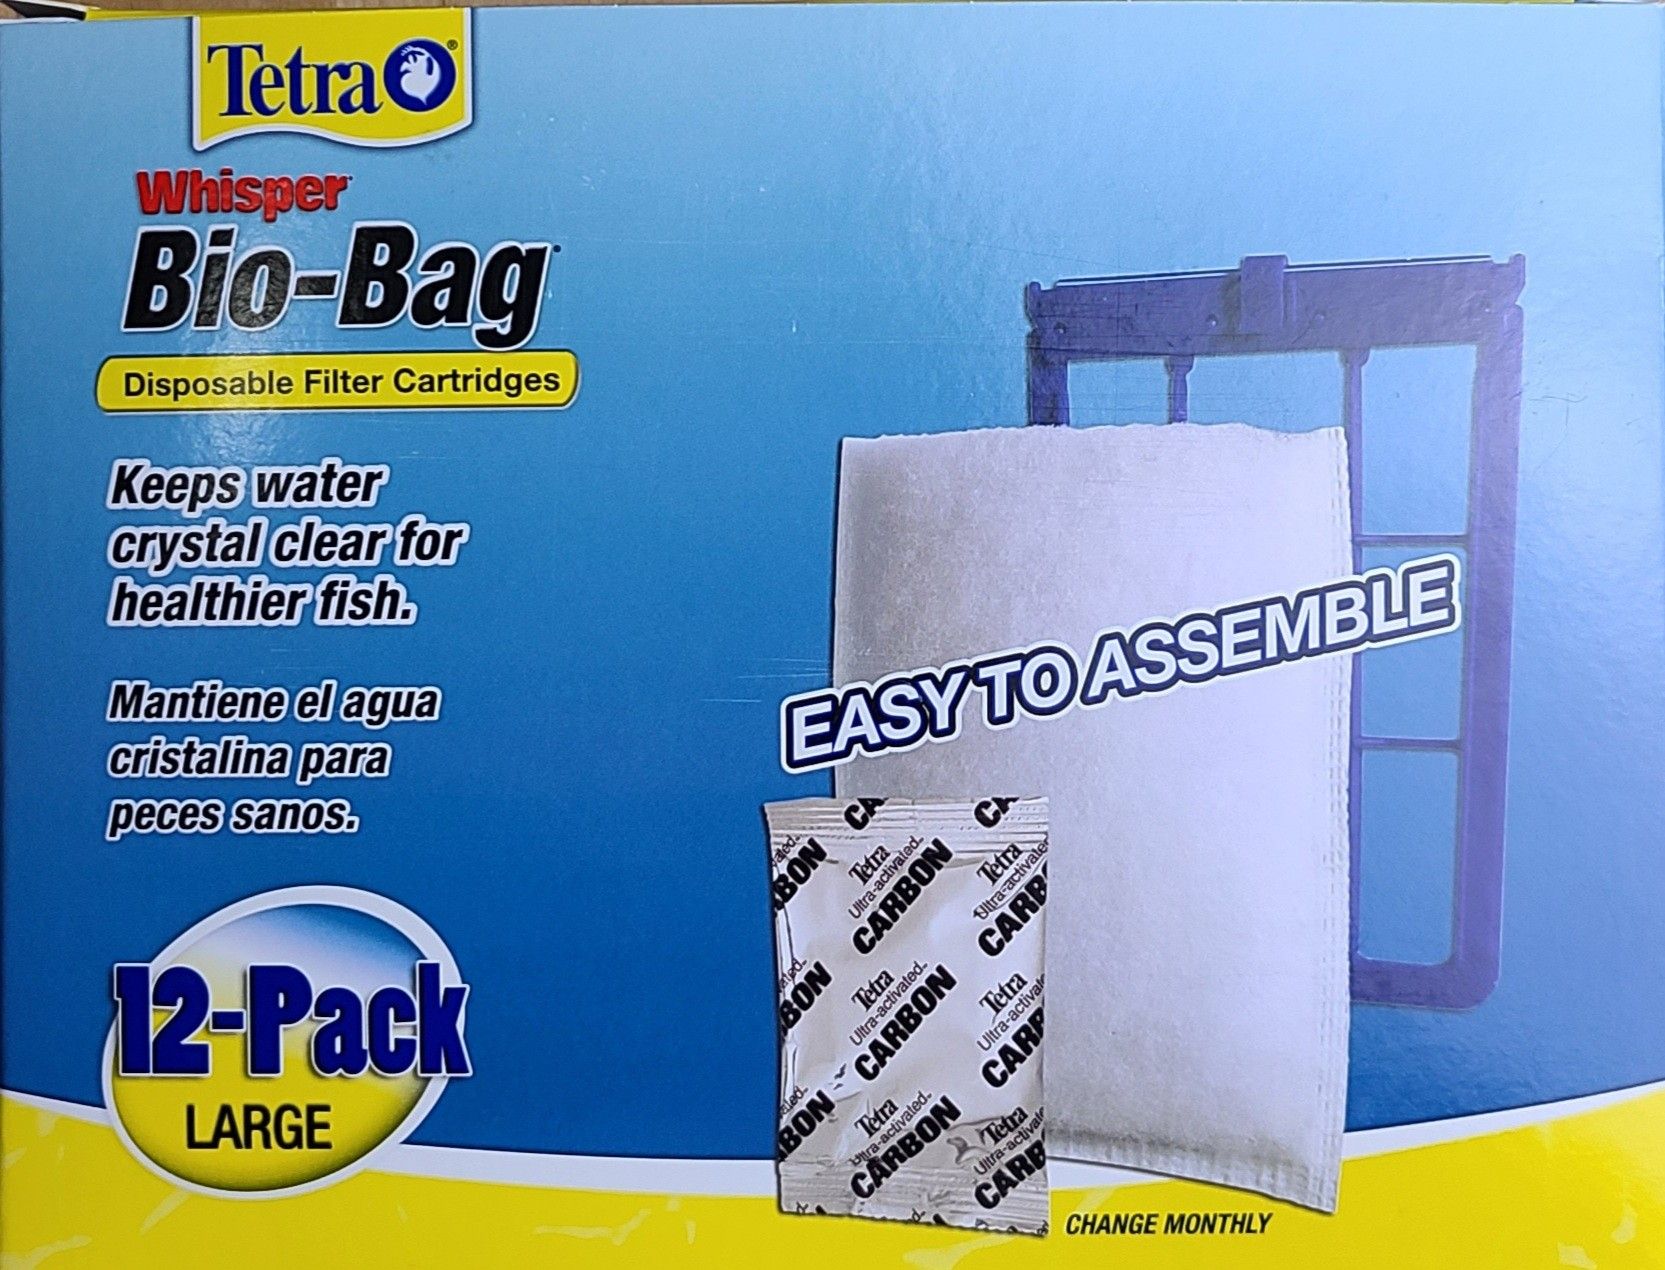 Tetra® Whisper Bio-Bag Disposable Filter Cartridge 12-Pack Large